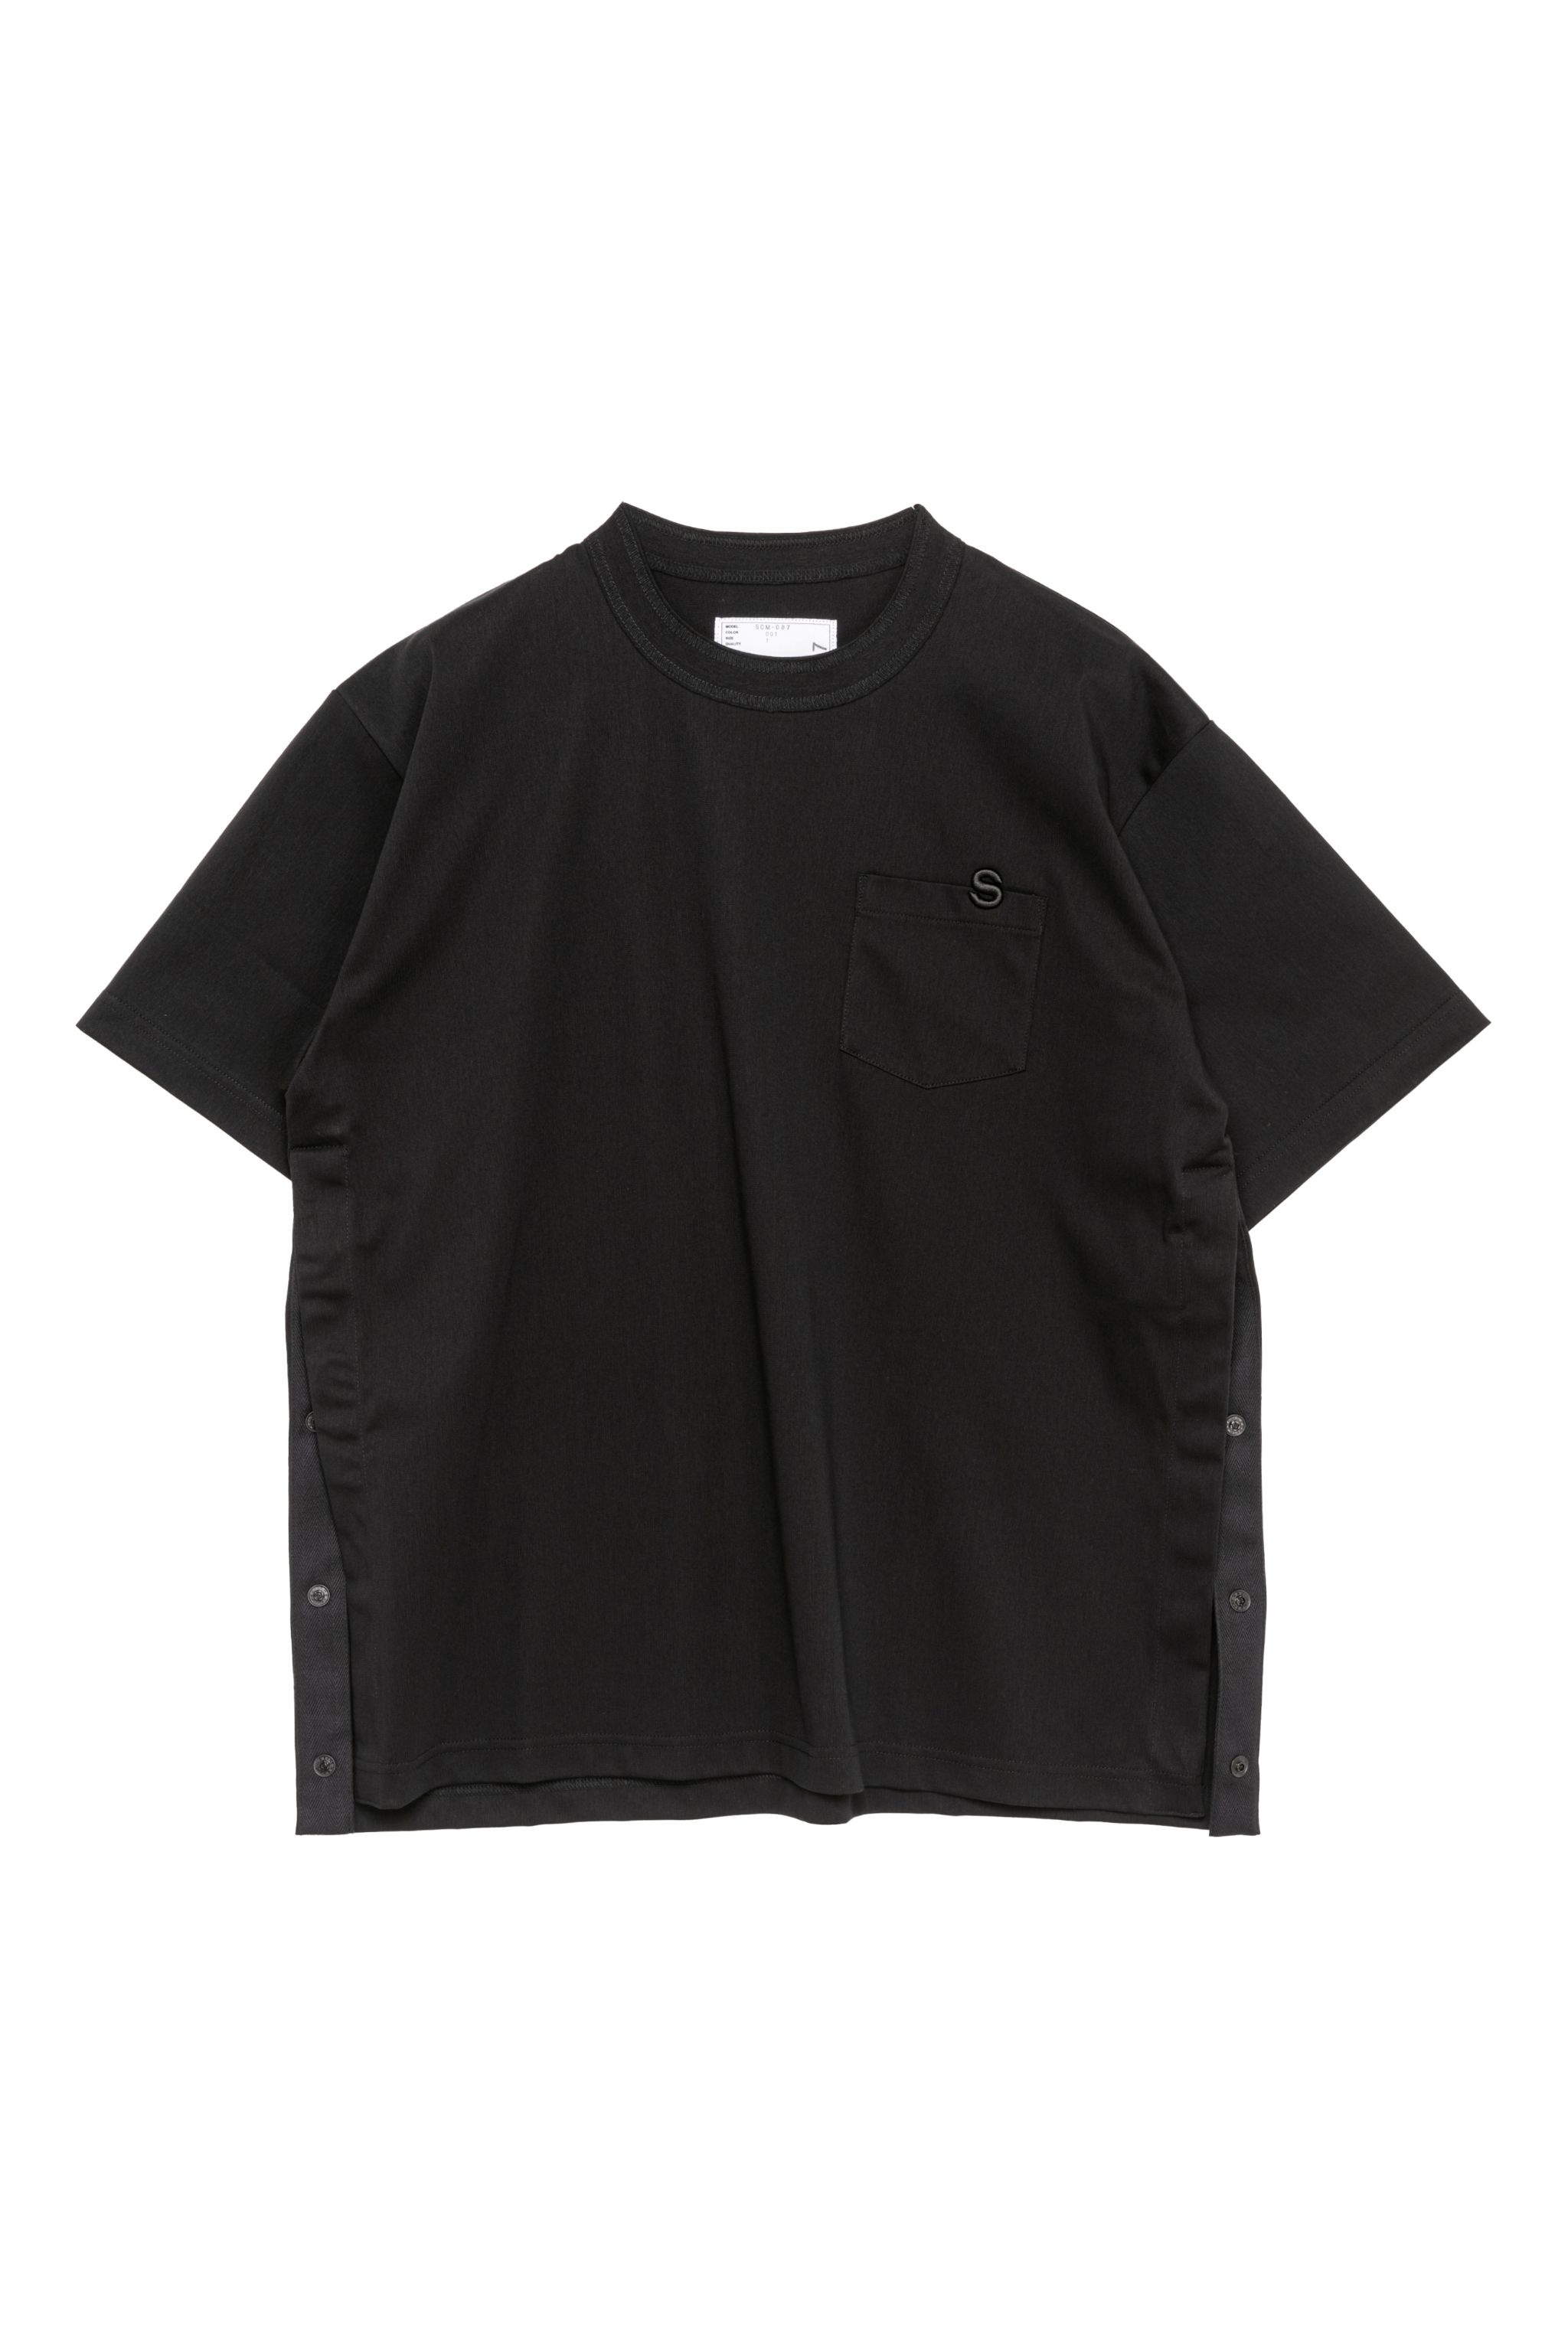 s Cotton Jersey T-Shirt - 2